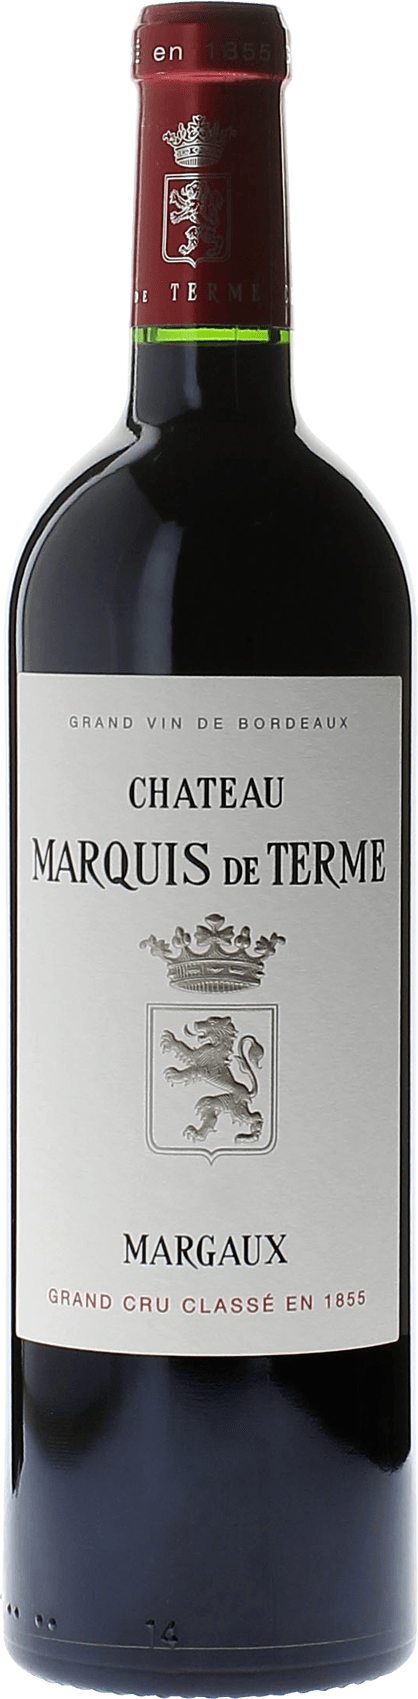 Marquis de terme 1985 4me Grand cru class Margaux, Bordeaux rouge